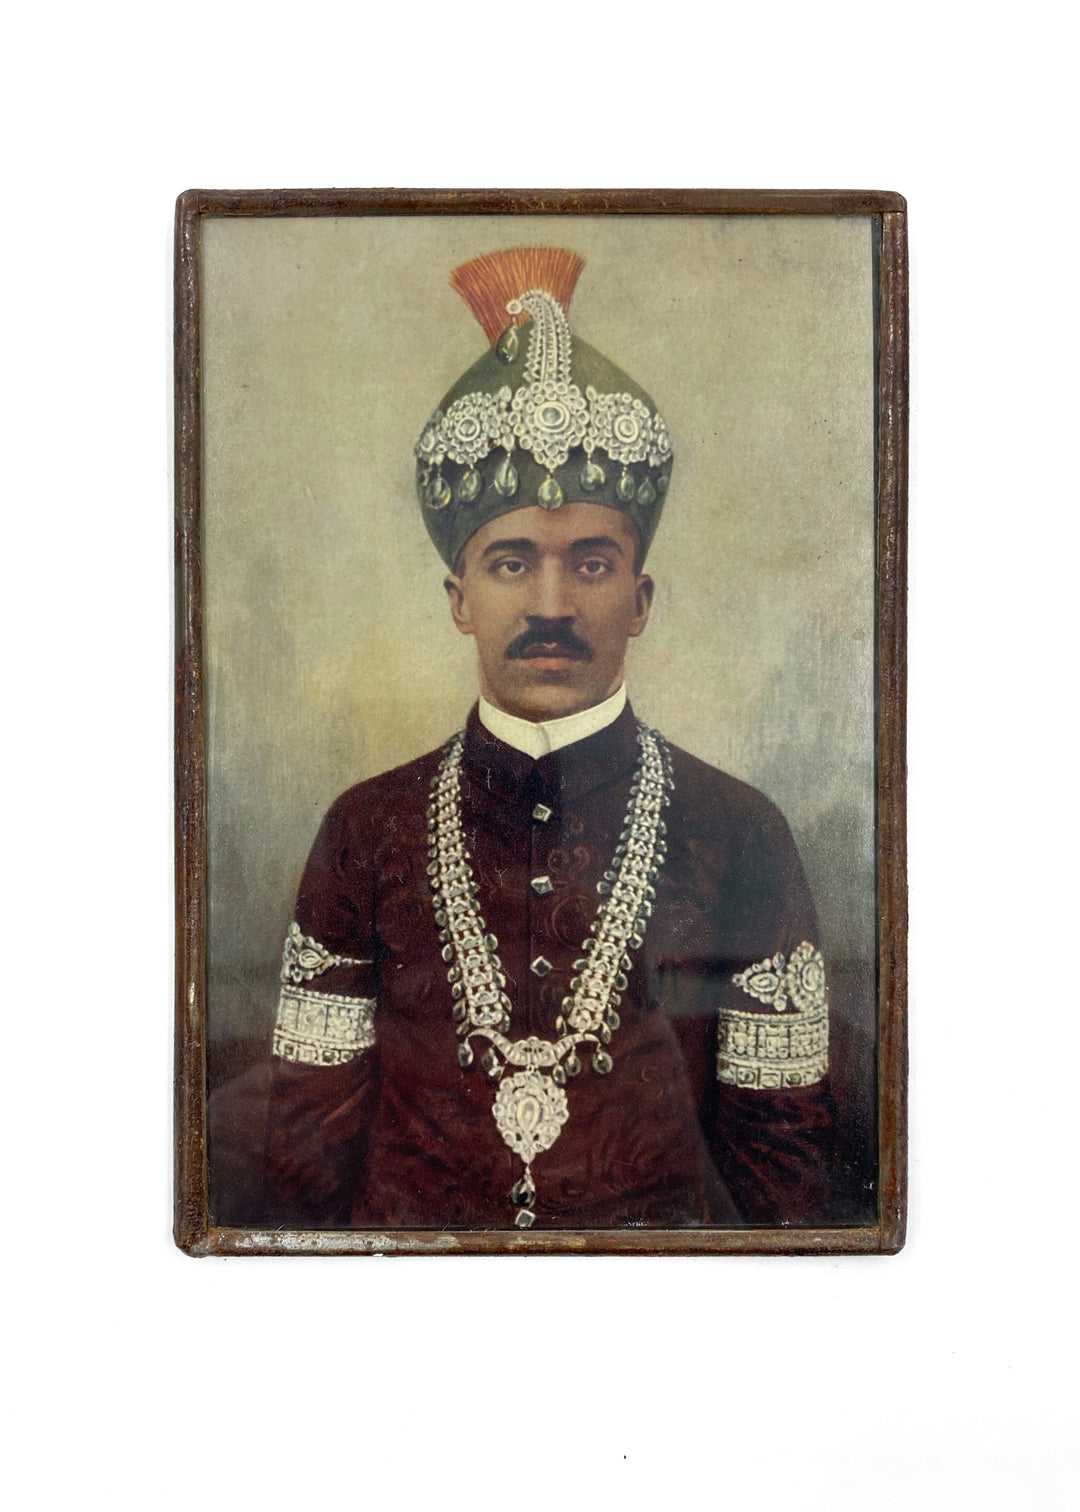 Maharaja Dholpur